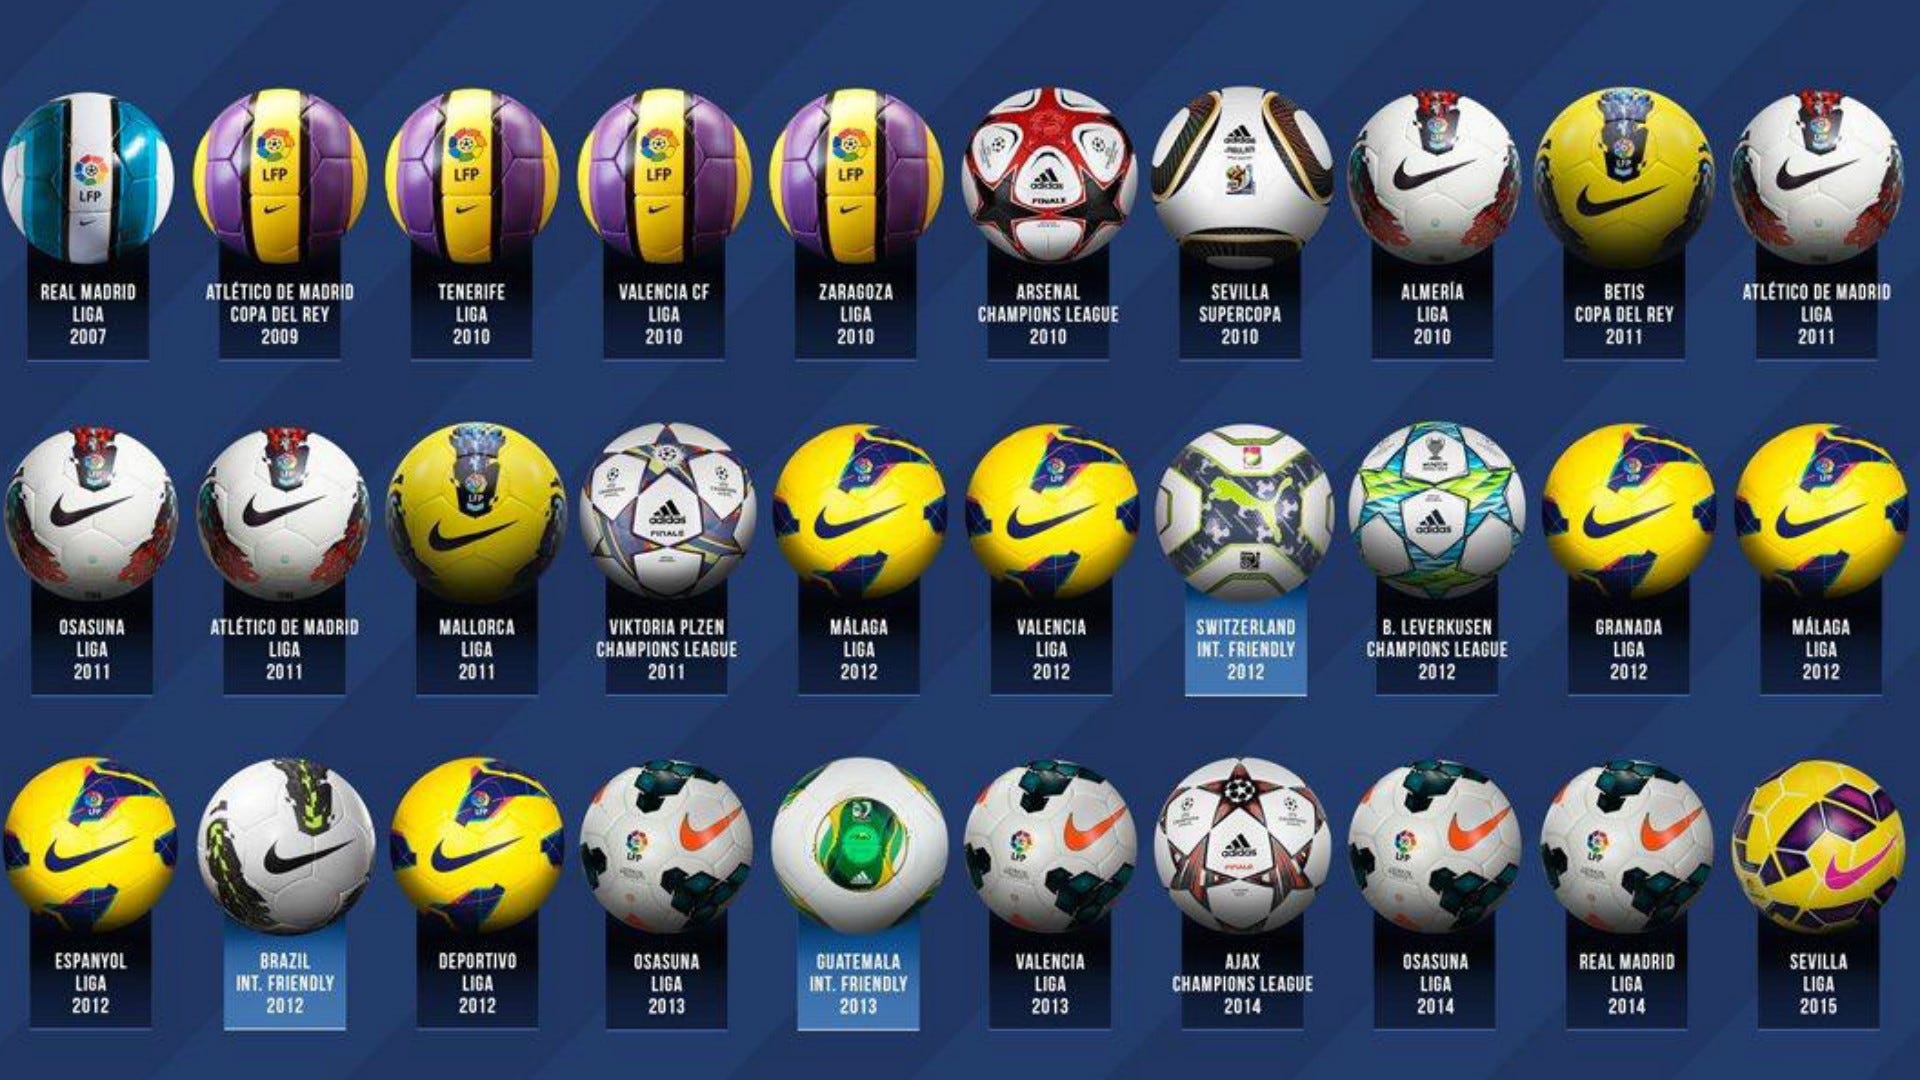 Coleccionista de balones: todos los hat-tricks de Lionel Messi   Espana